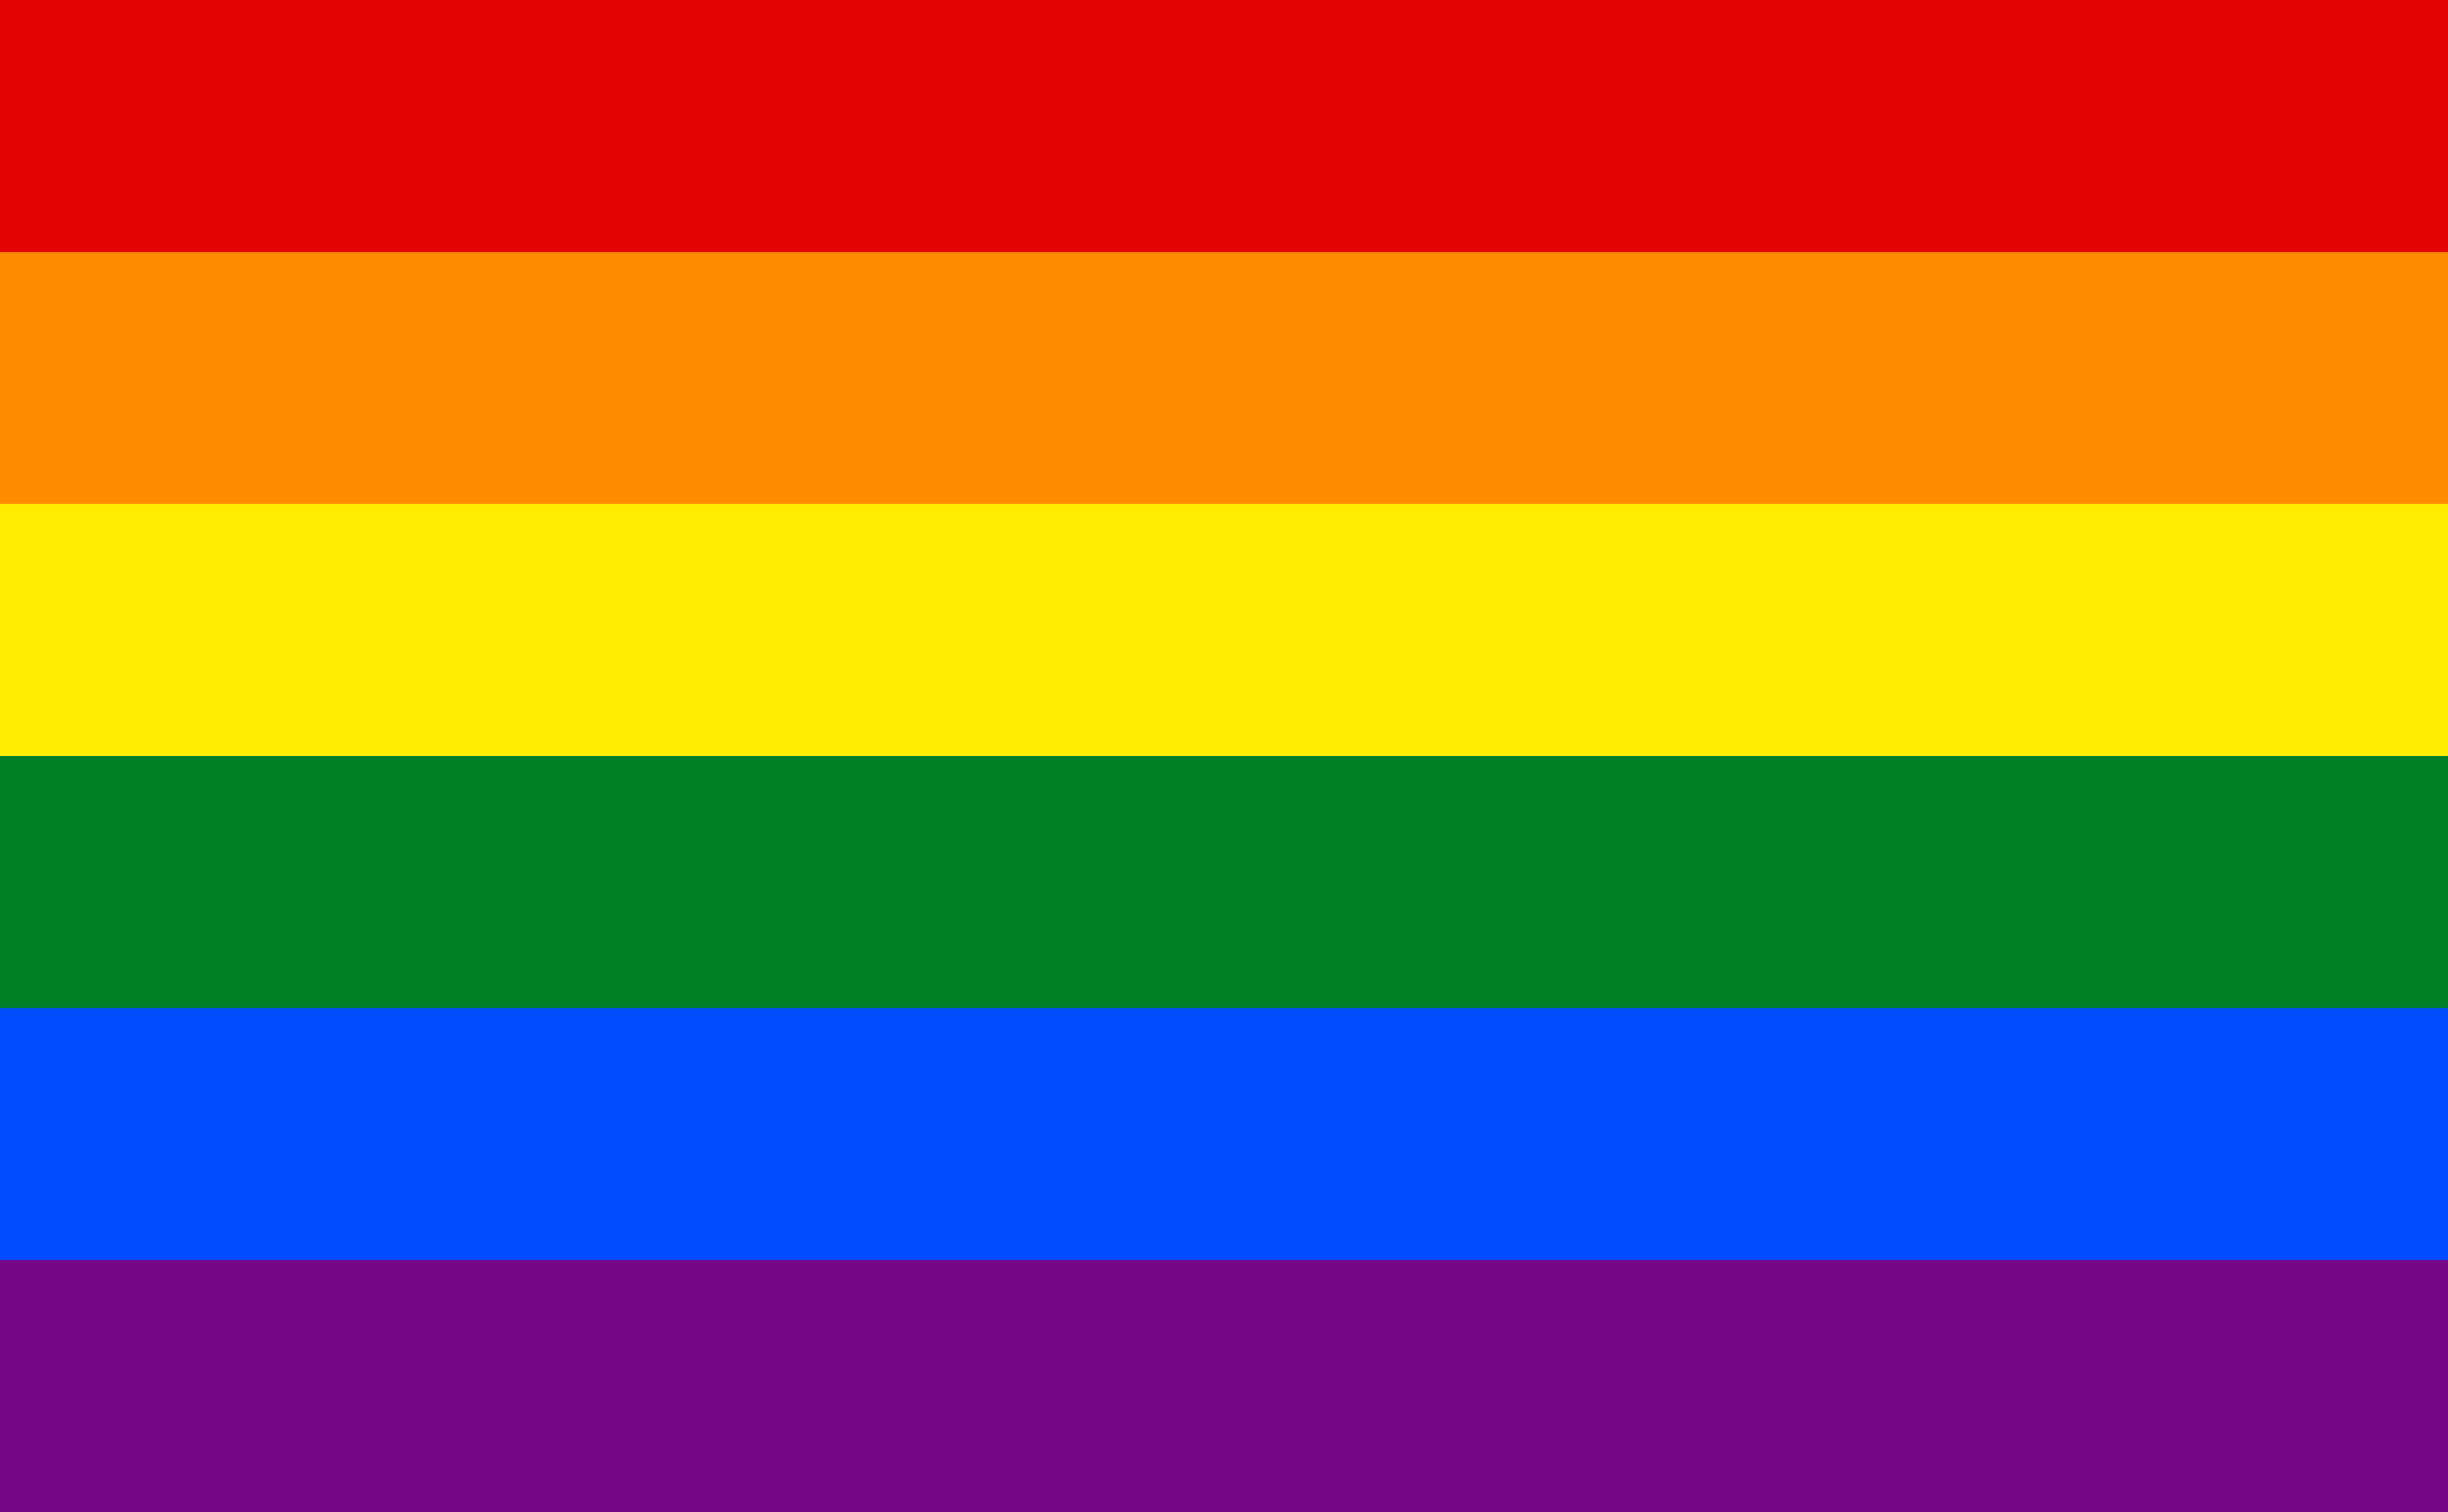 Orgulho LGBTQIA+: como estão seus conhecimentos sobre a comunidade?